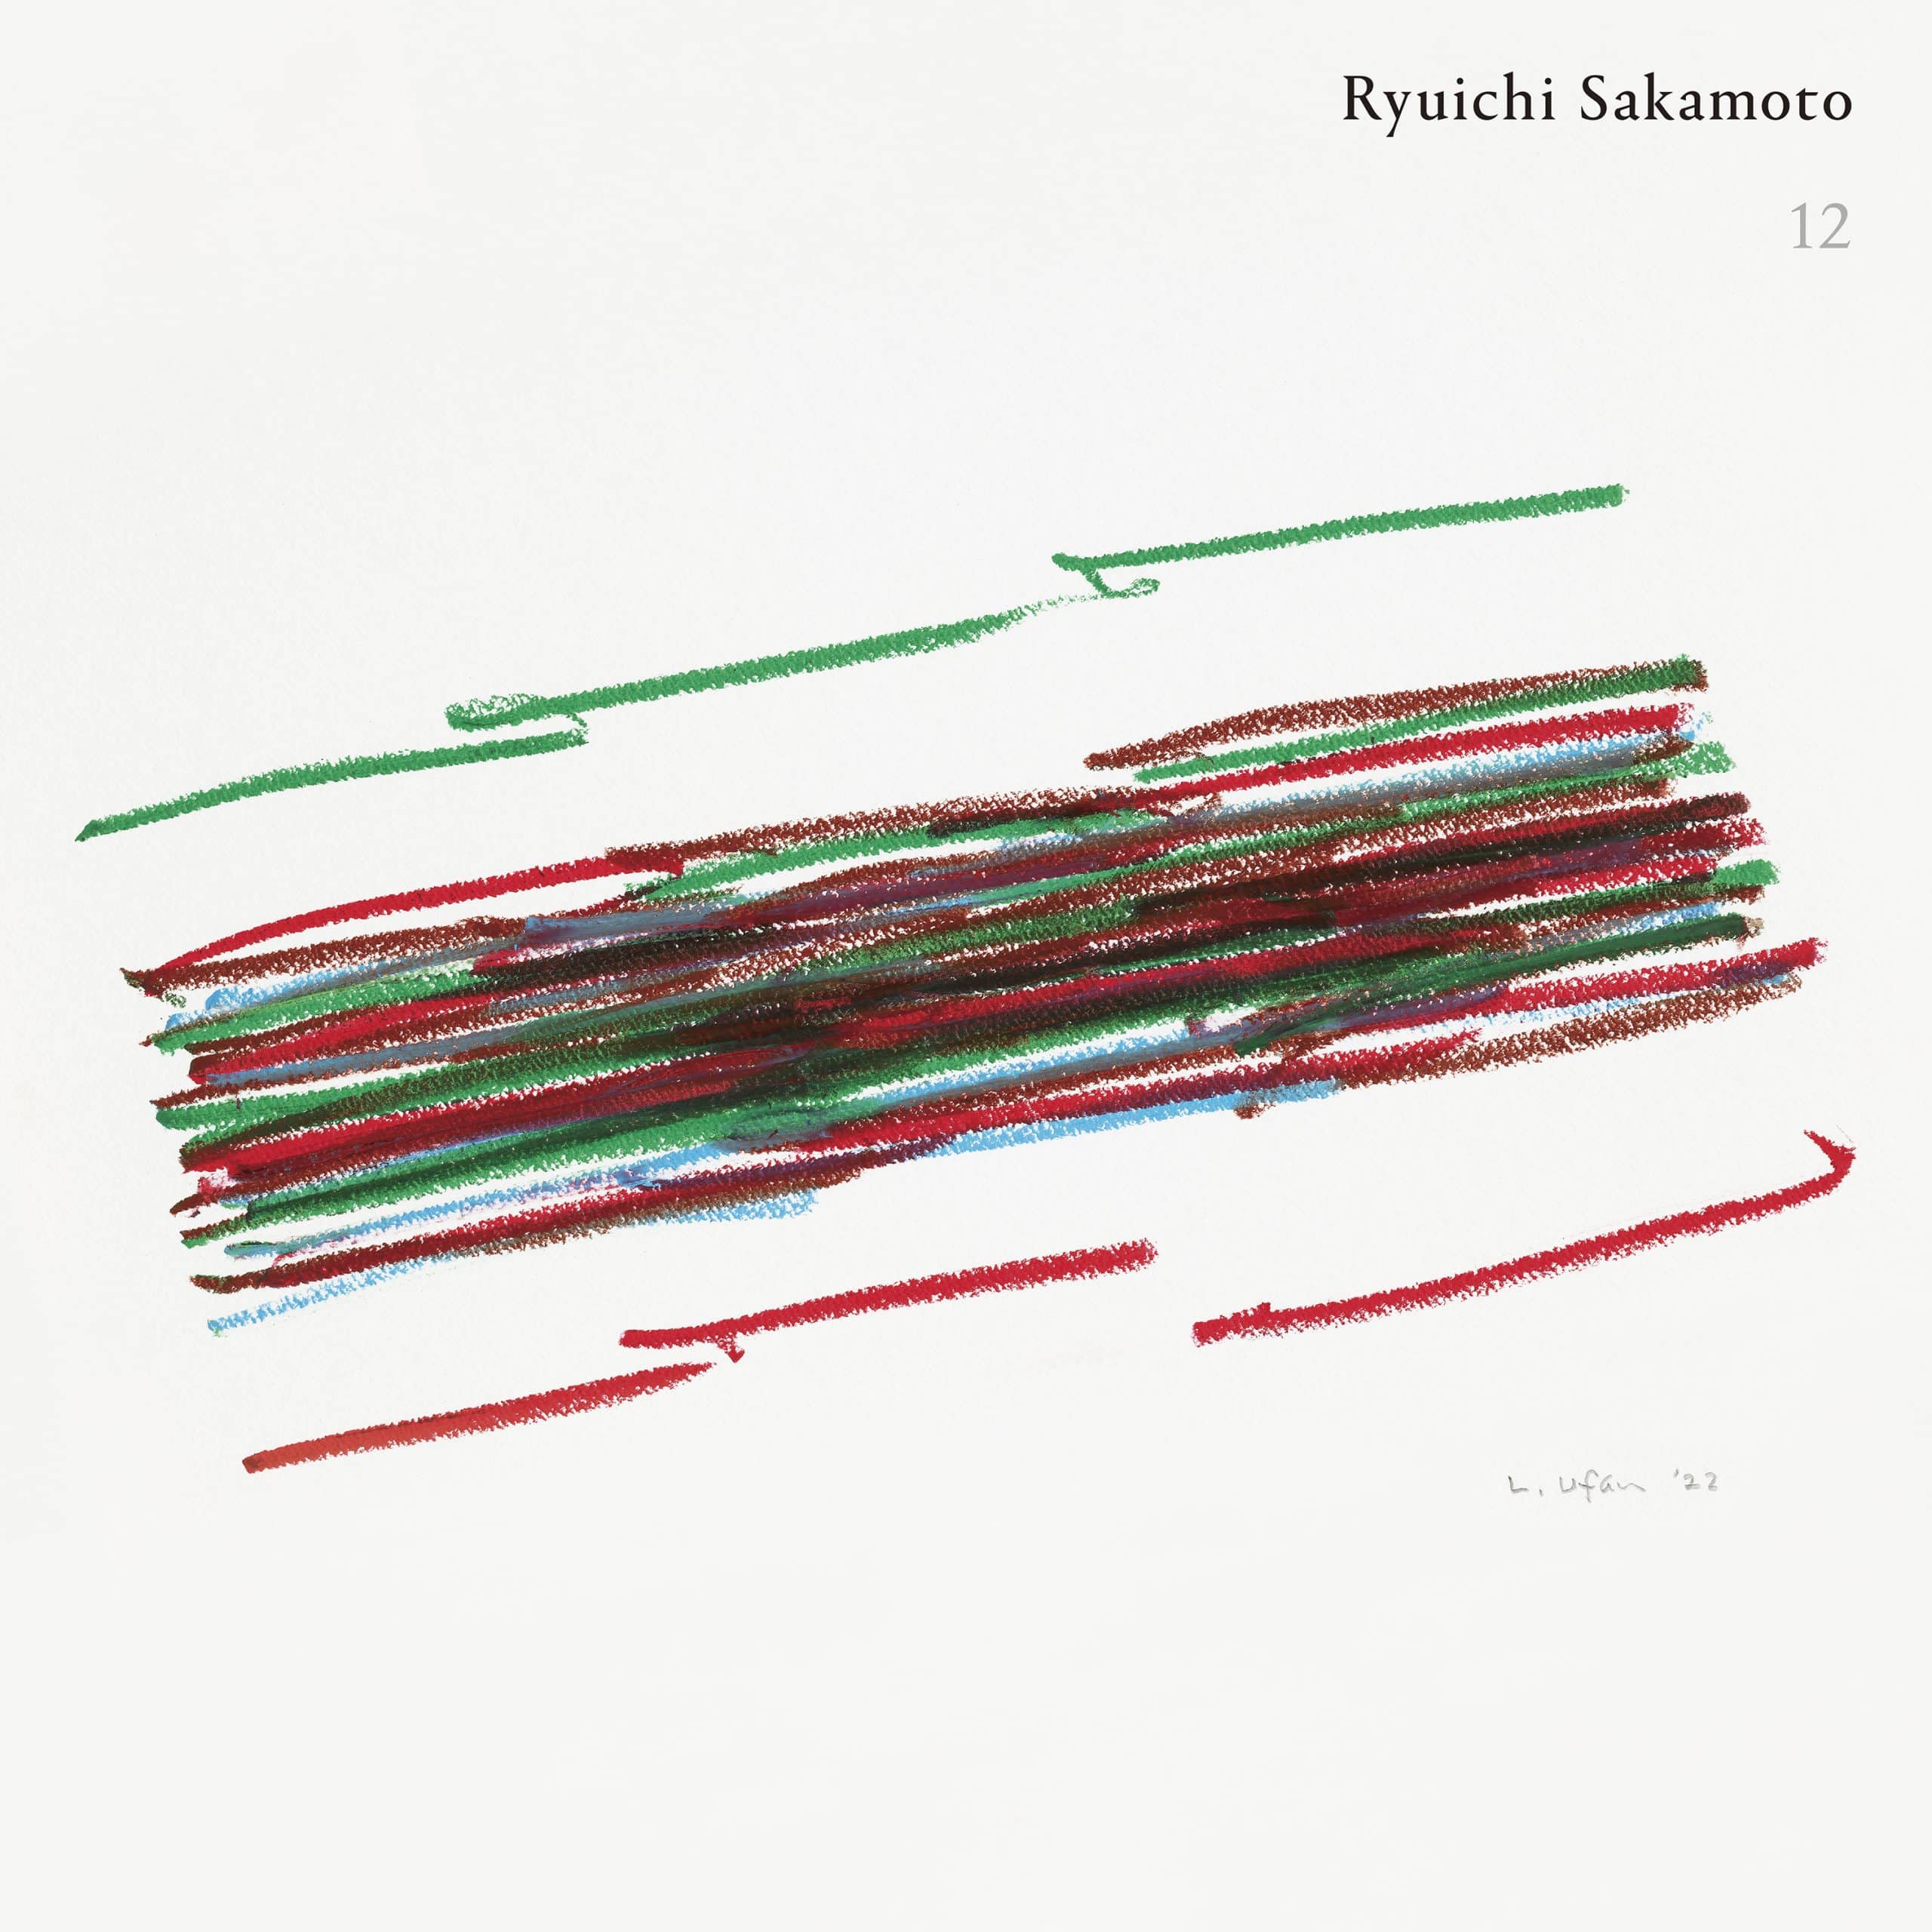 Embargoed-Until-November-21-ALBUM-COVER-Ryuichi-Sakamoto-12.jpg